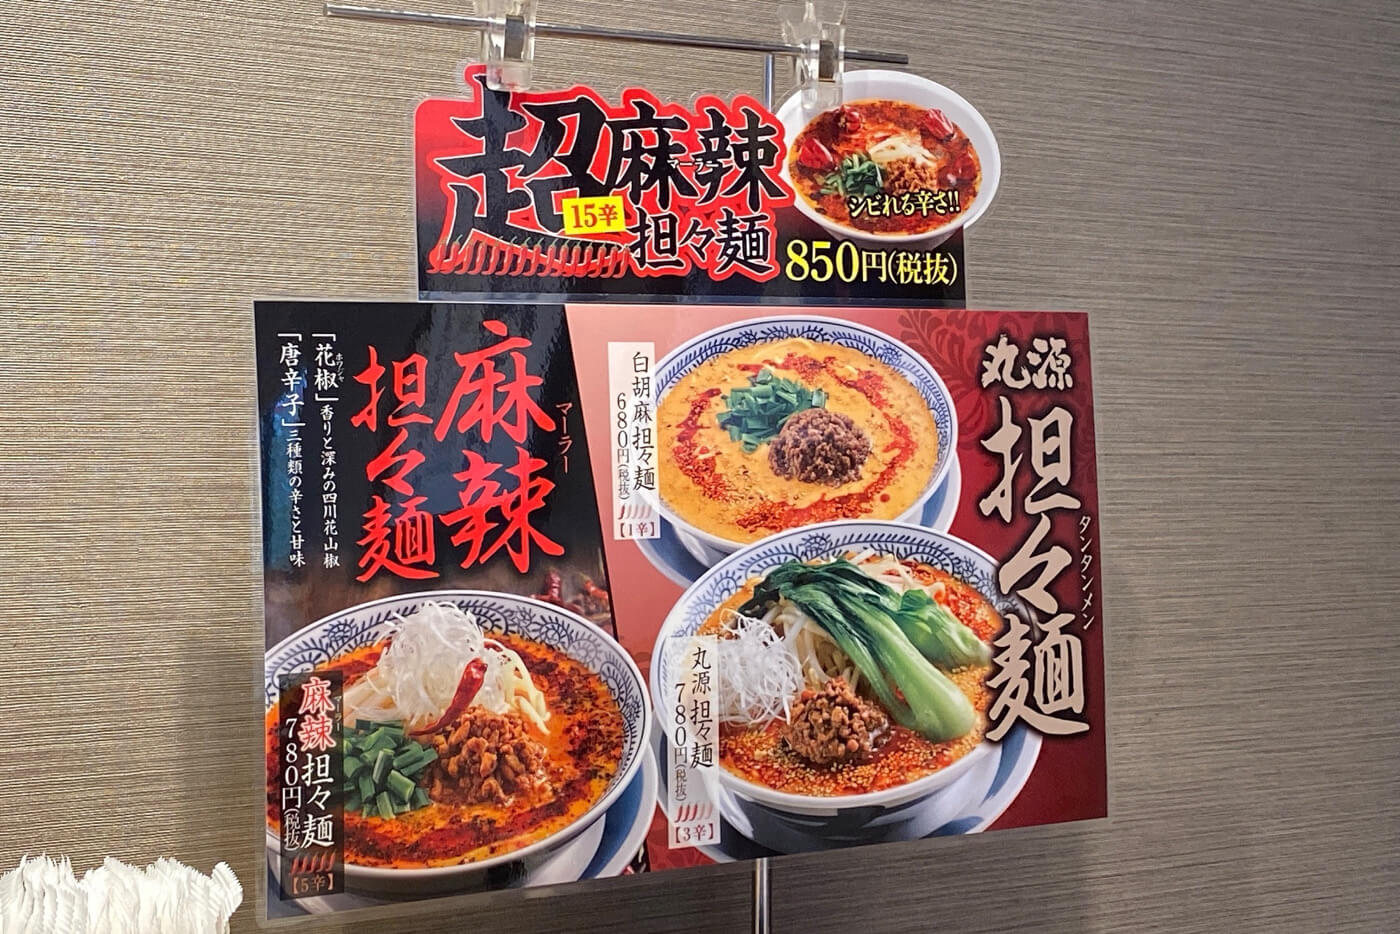 丸源ラーメン担々麺2019-2020年年版メニュー